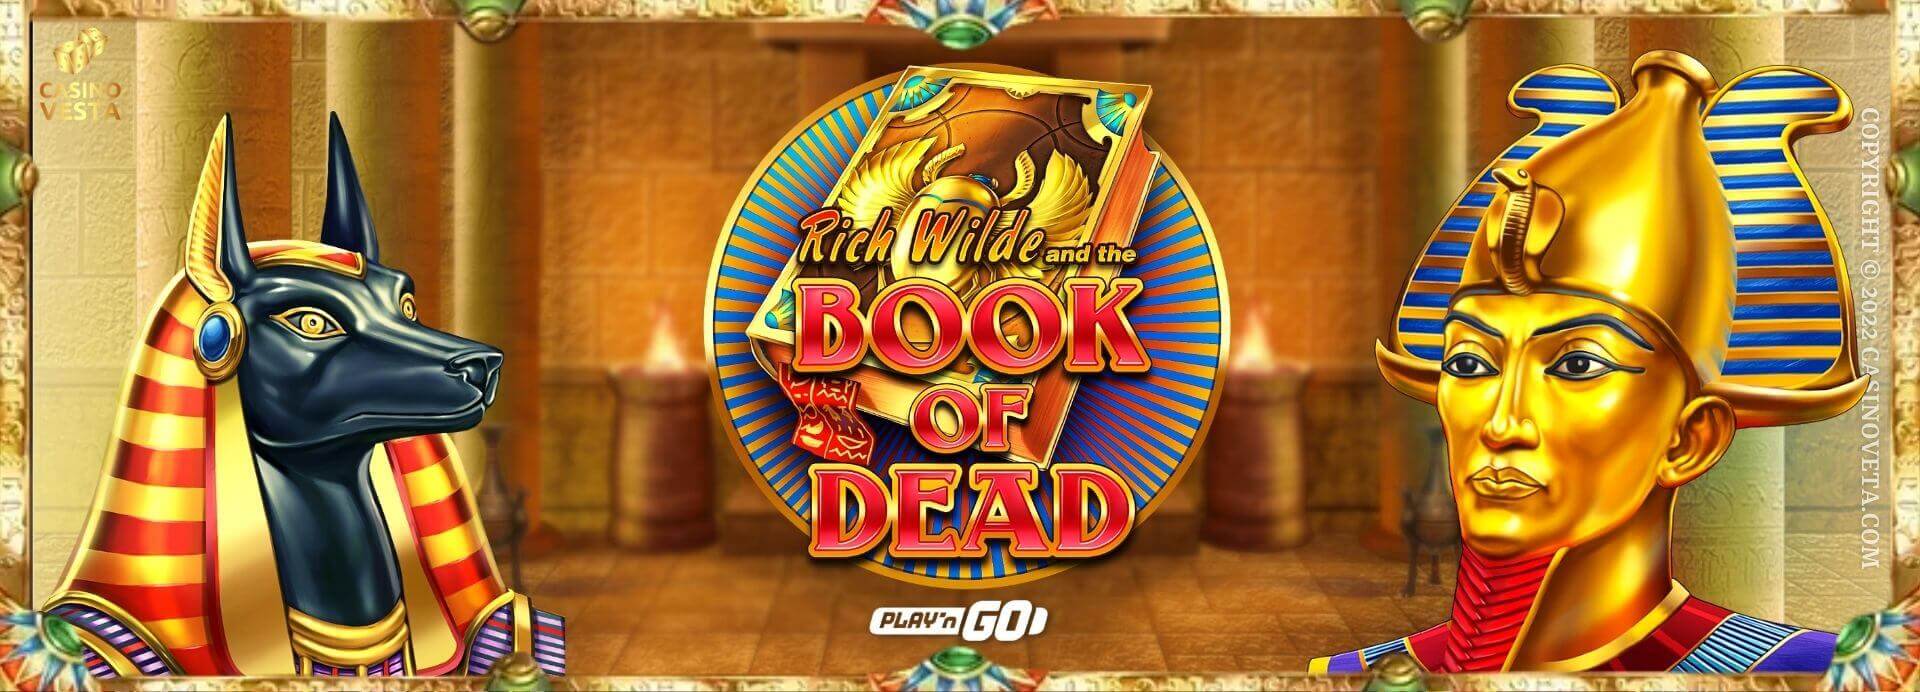 Historia detrás de la tragamonedas Rich Wilde and the Book of Dead de Play'n GO